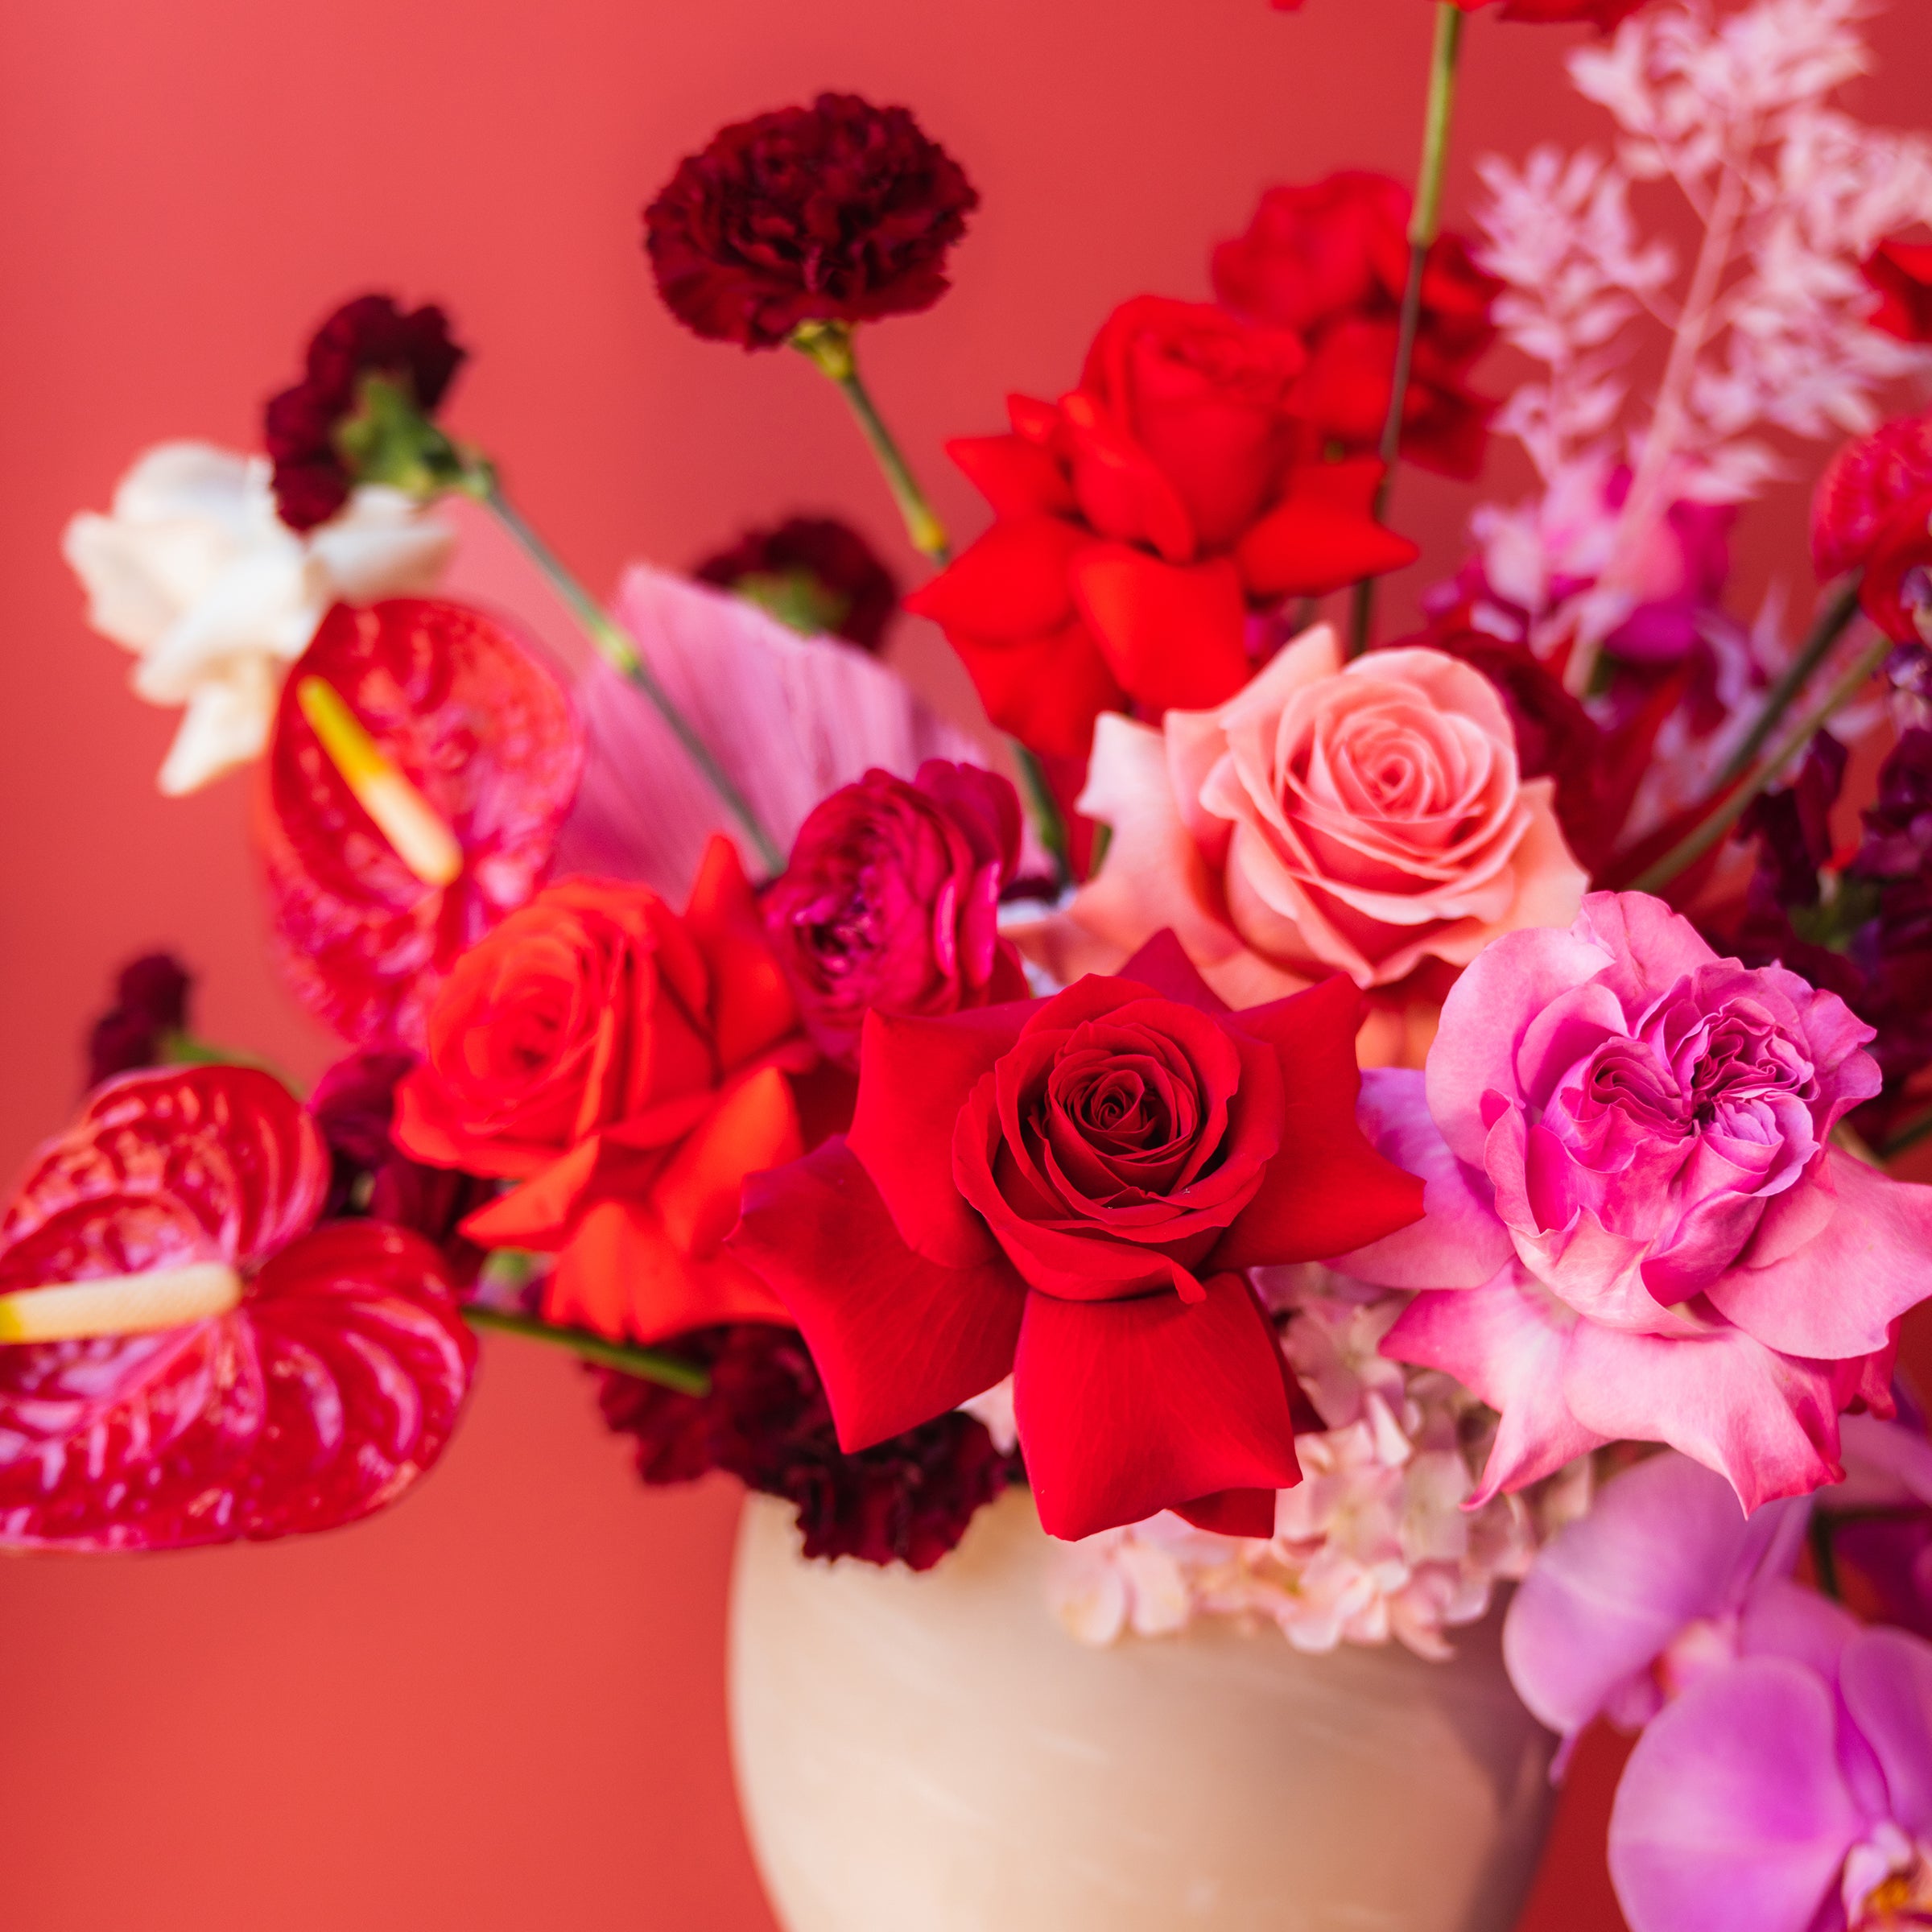 Rainbow Wrapped Bouquet – JJ's Flower Shop